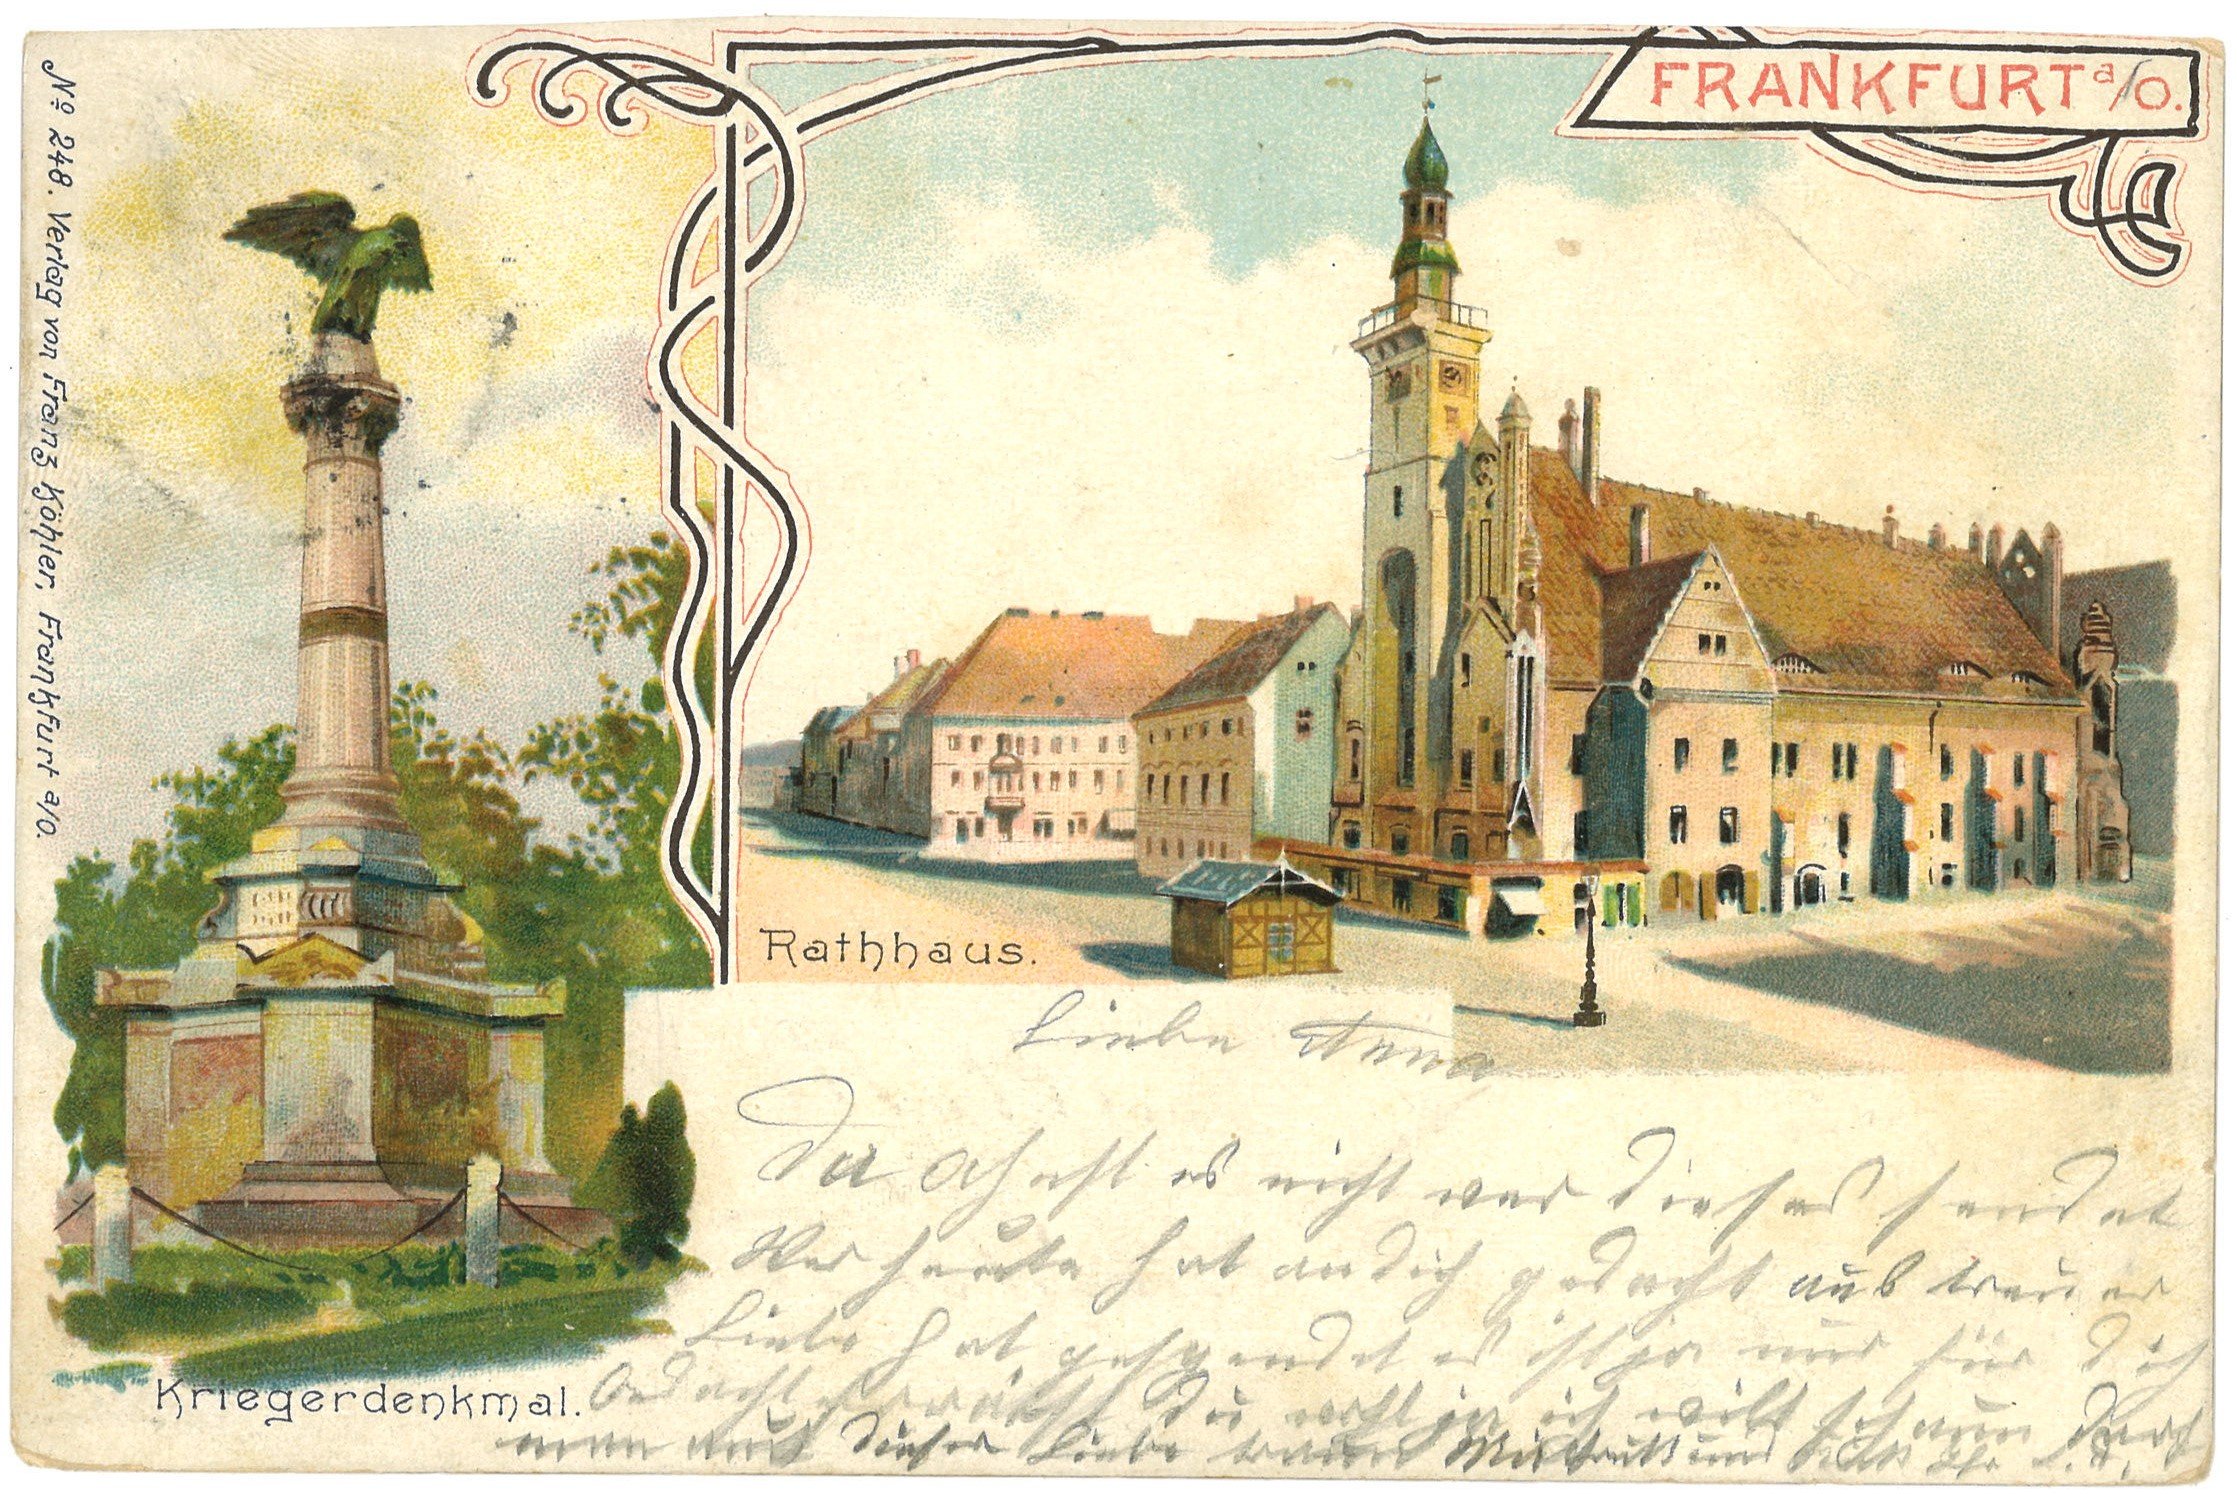 Frankfurt (Oder): Zwei Ansichten (Landesgeschichtliche Vereinigung für die Mark Brandenburg e.V., Archiv CC BY)